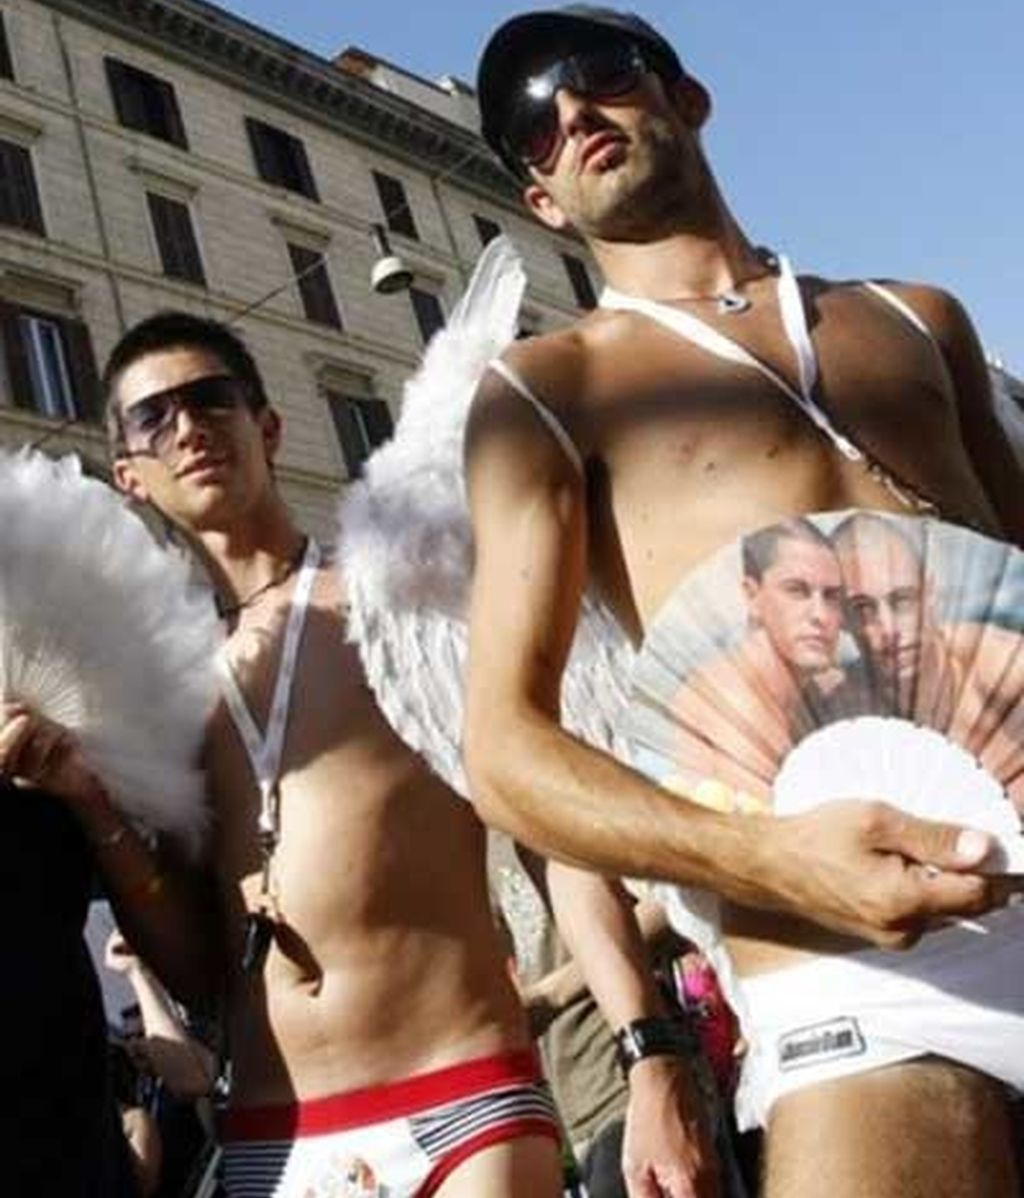 Celebraciones del Orgullo Gay en el mundo